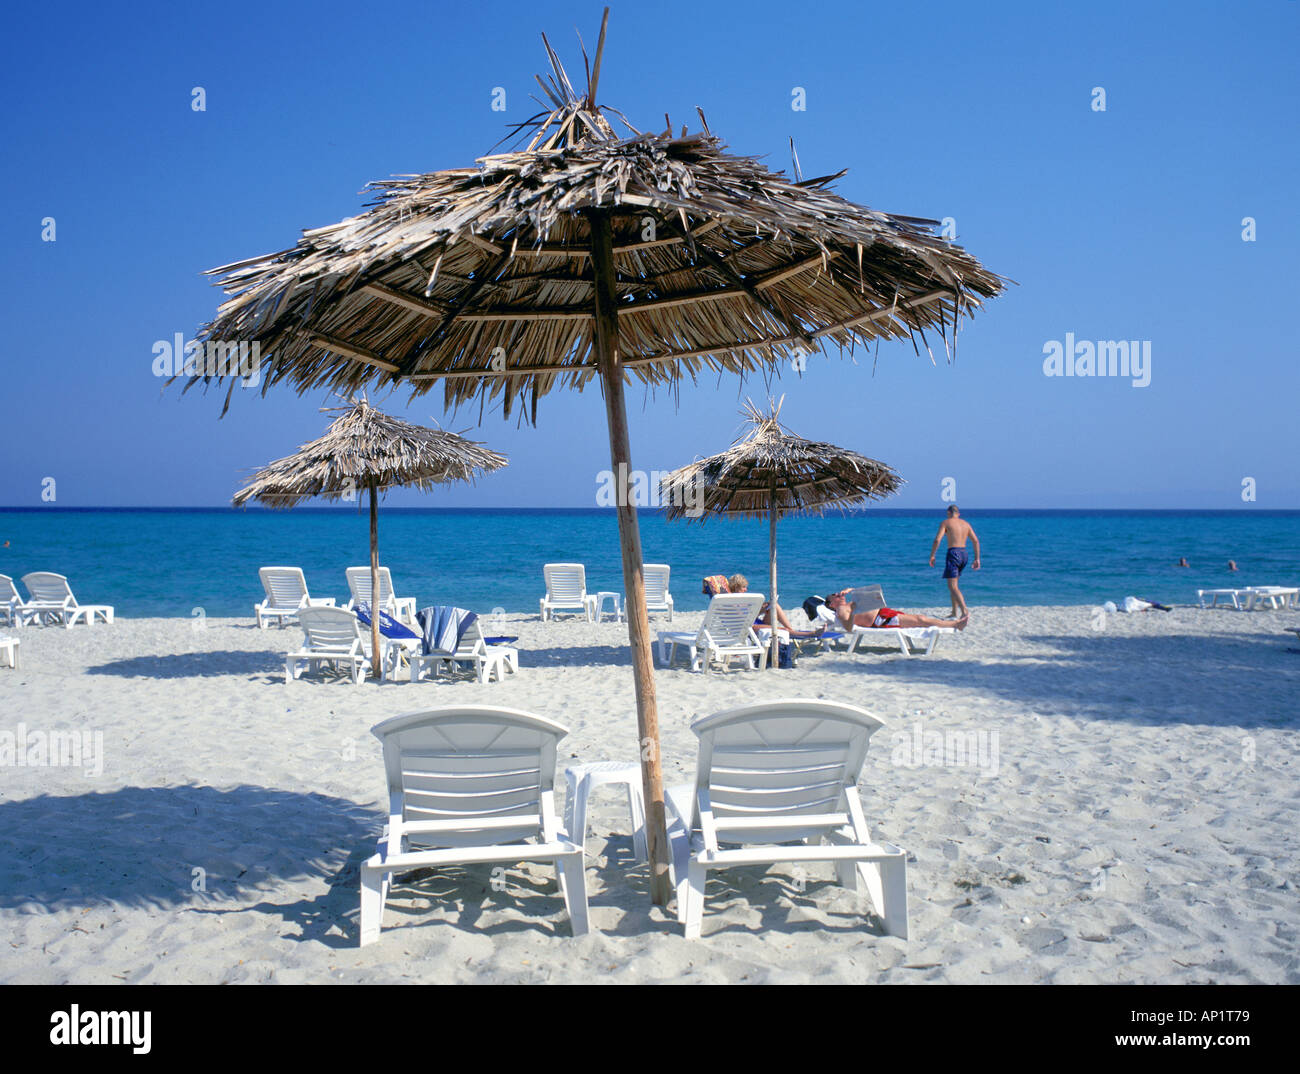 Plage de Santorin, Grèce avec des feuilles de palmier séchées utilisées comme pare-soleil, ombre et d'une mer bleue et ciel sans nuages Banque D'Images